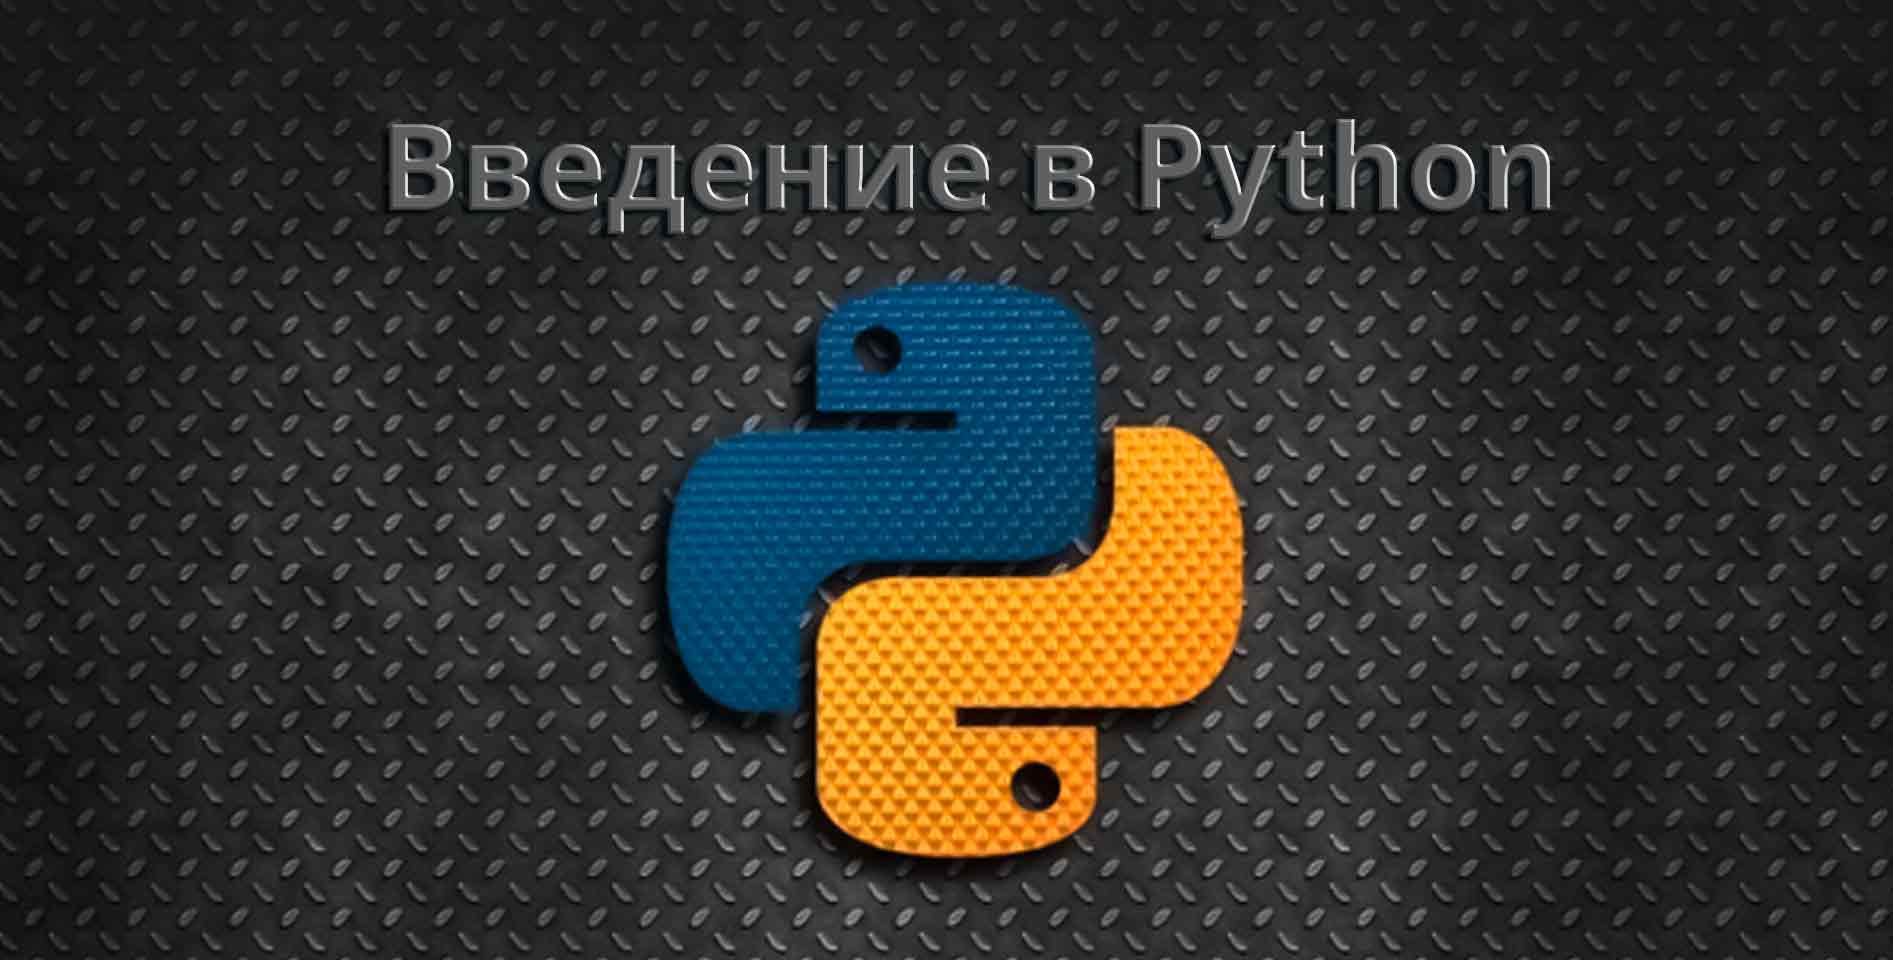   Hexlet — Введение в Python